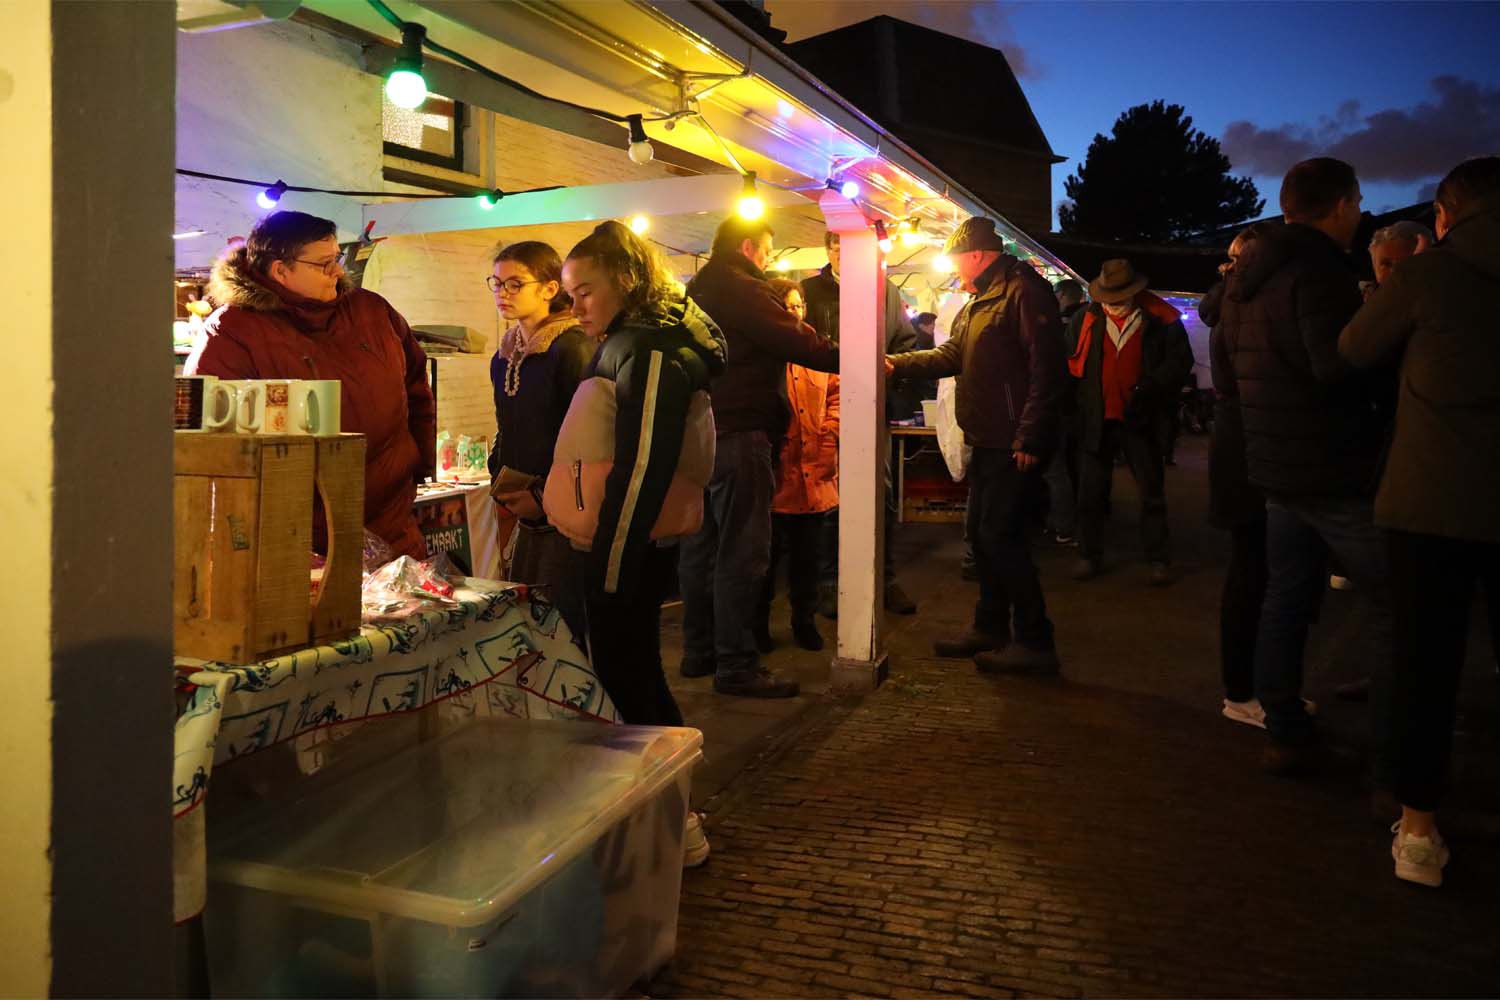 Kerstmarkten in Midden-Delfland - 10-14 december 2019